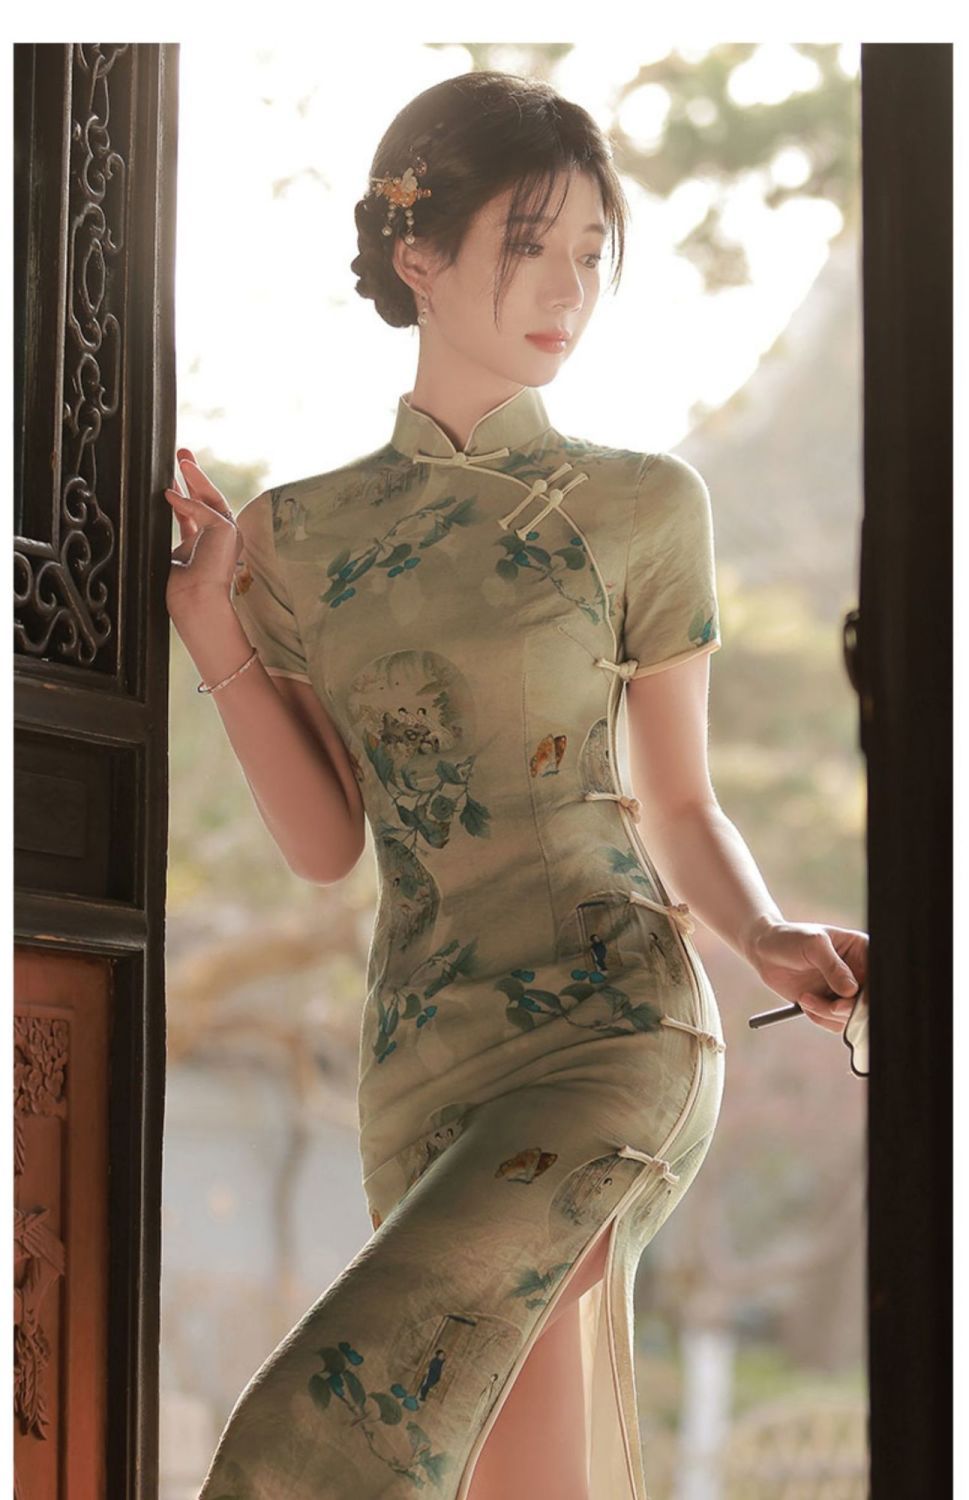 Đầm Thượng Hải, chất liệu nhung chun, co giãn,... - Thời trang Áo dài, sườn  xám Thượng Hải, váy, trang phục truyền thống | Facebook